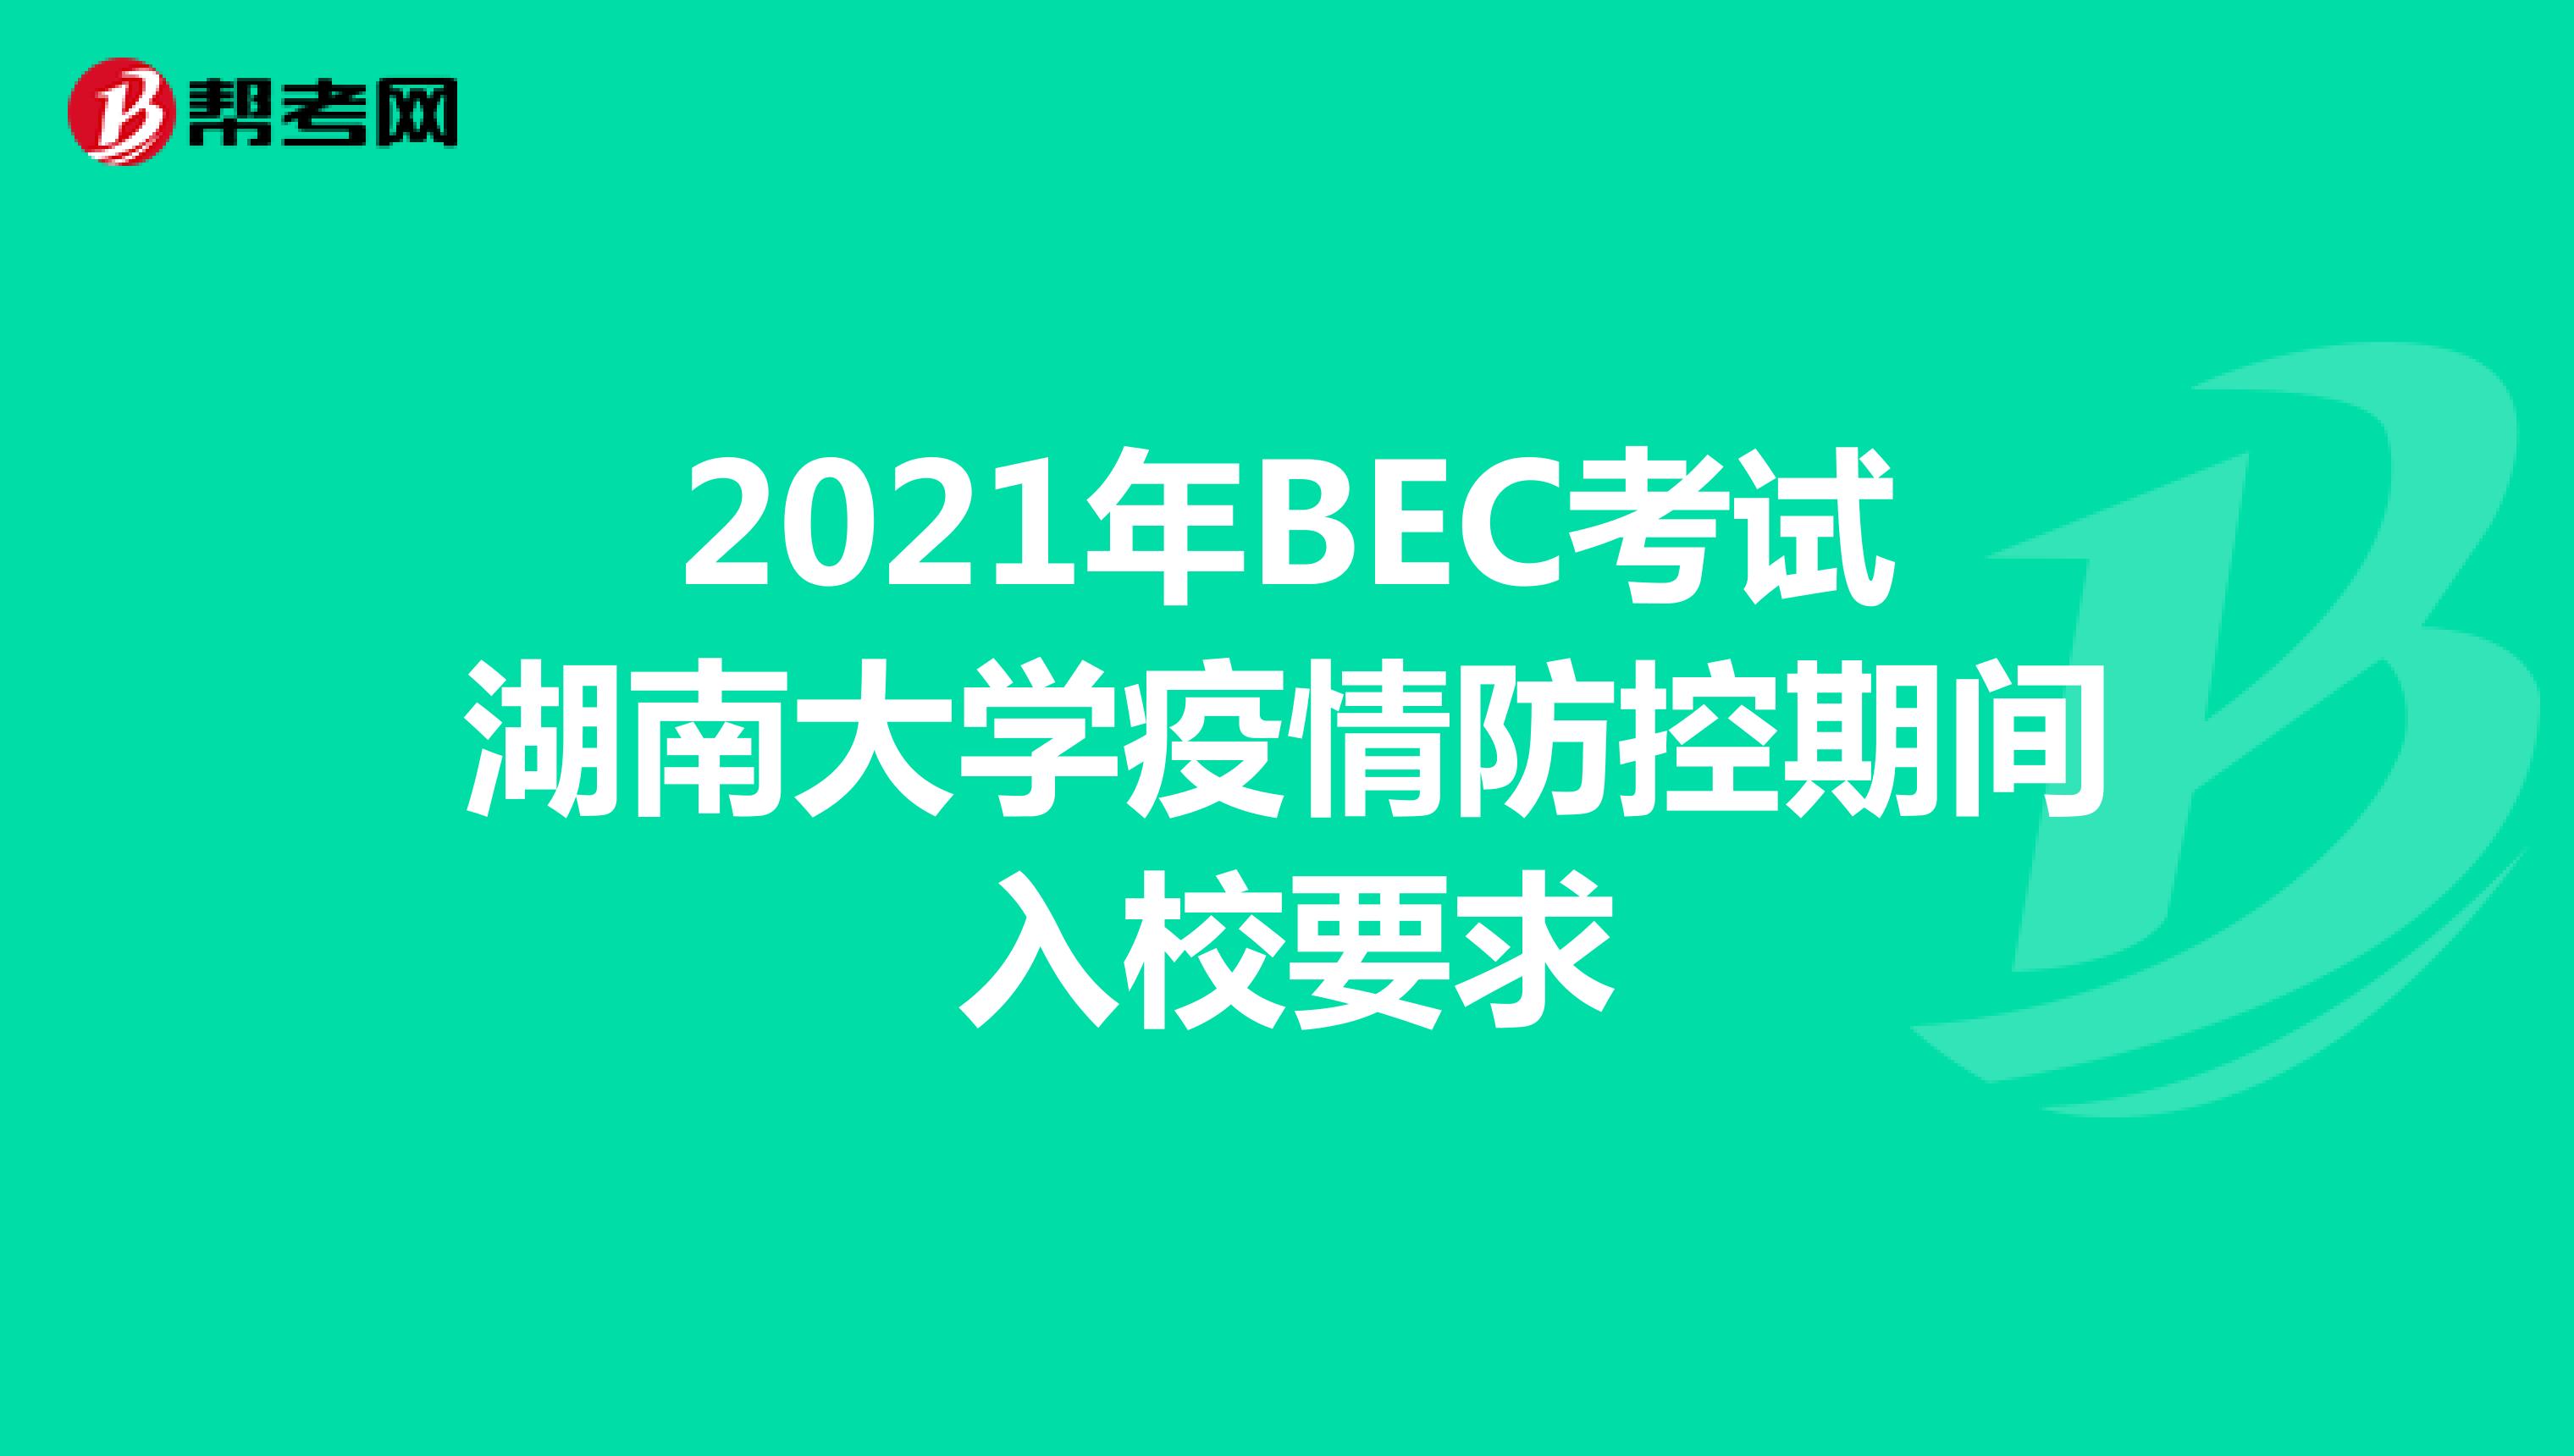 2021年BEC考试湖南大学疫情防控期间入校要求